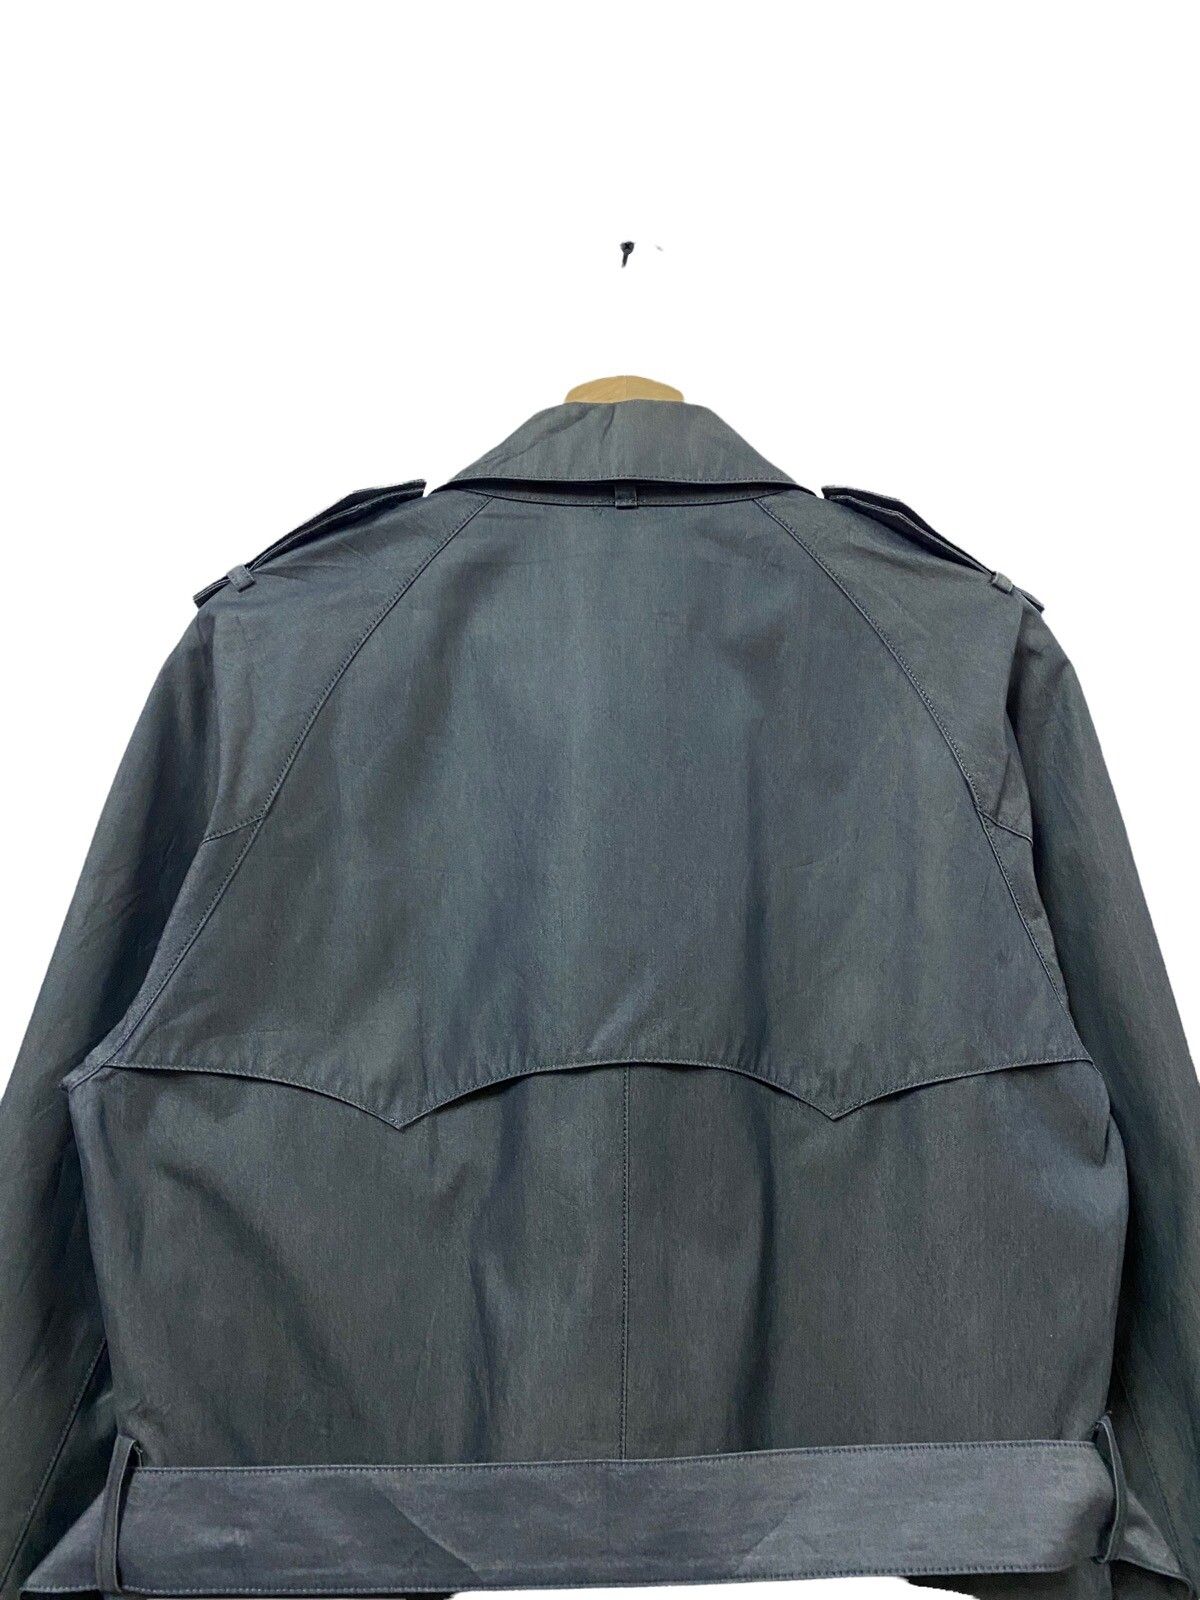 PS Paul Smith Trech Coat Grey Jacket - 12